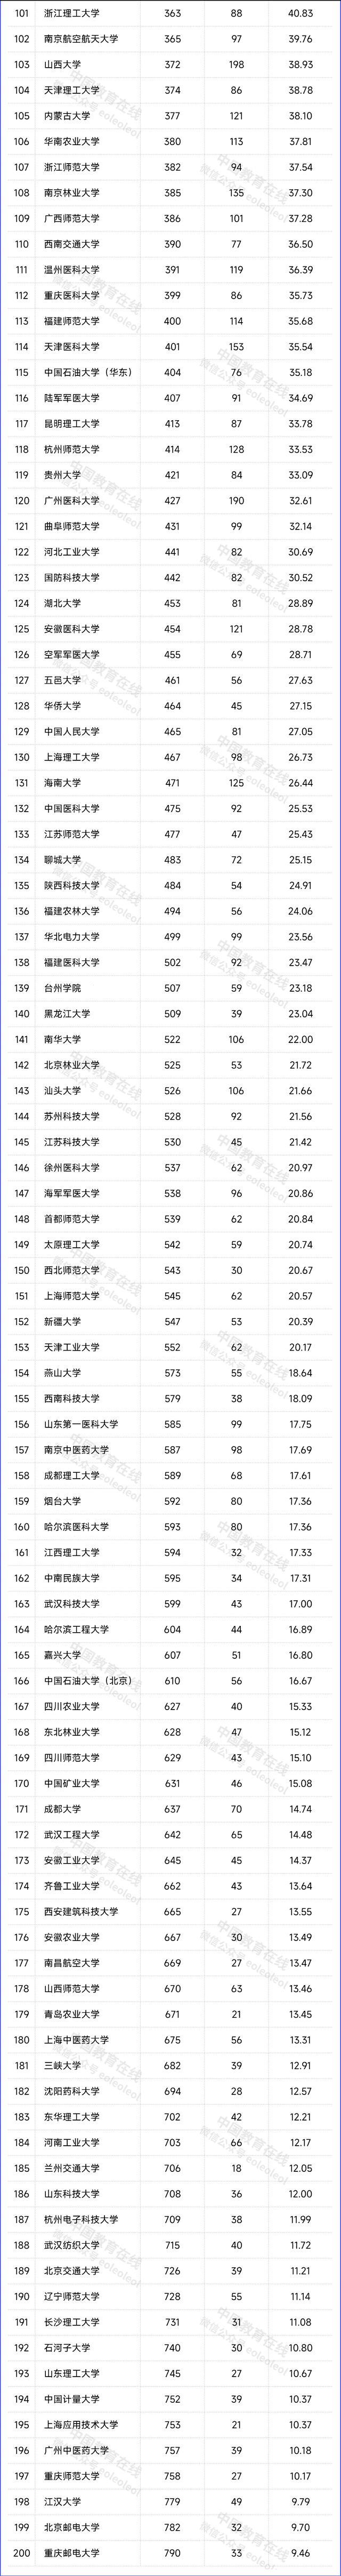 自然指数排名中国内地高校top200名单如下:非双一流高校中,深圳大学